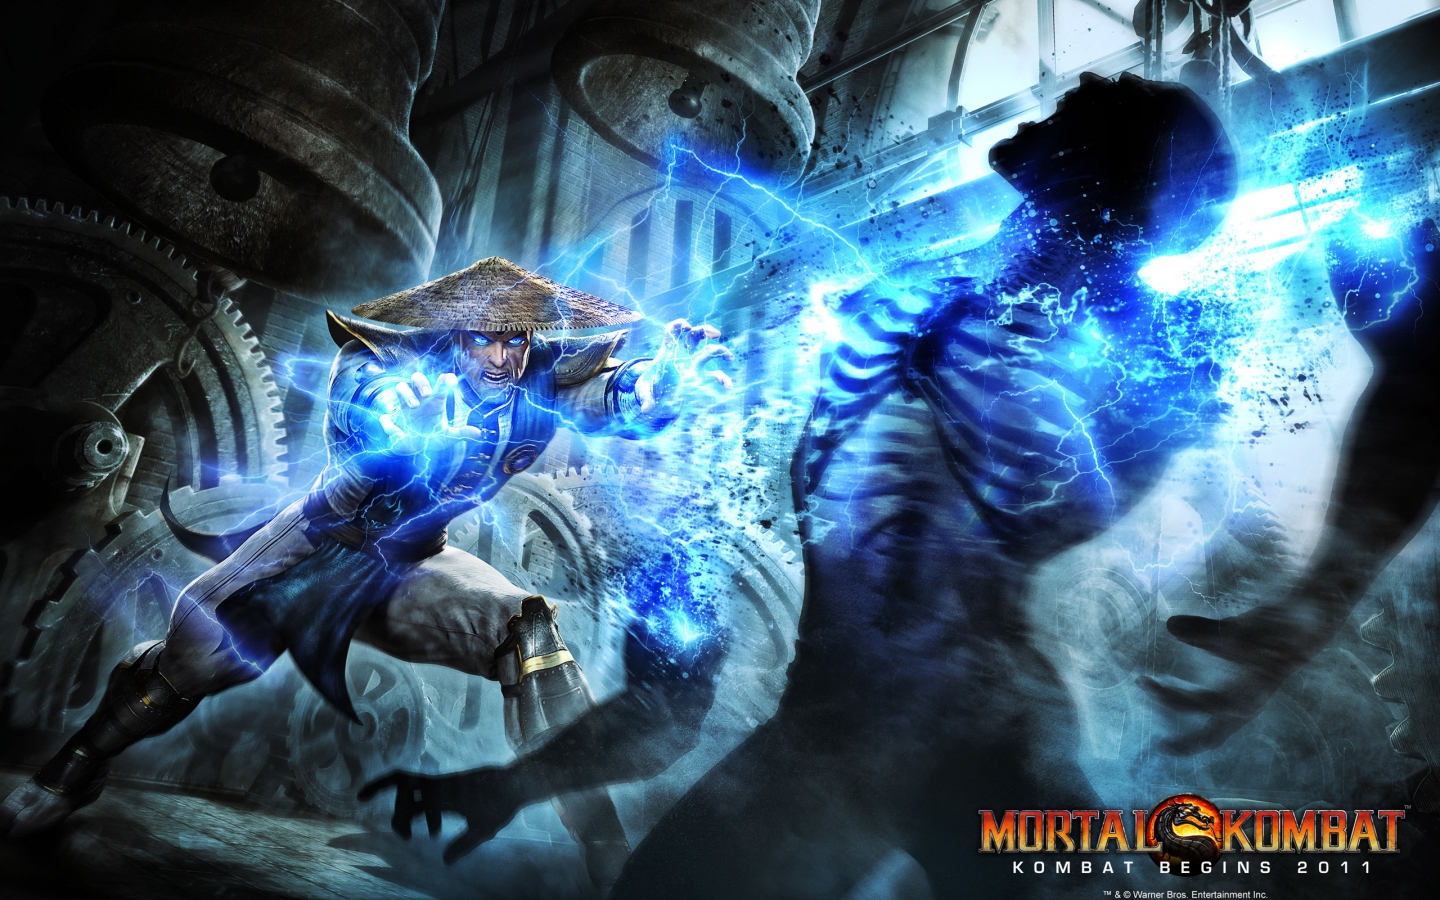 Mortal Kombat Raiden for 1440 x 900 widescreen resolution